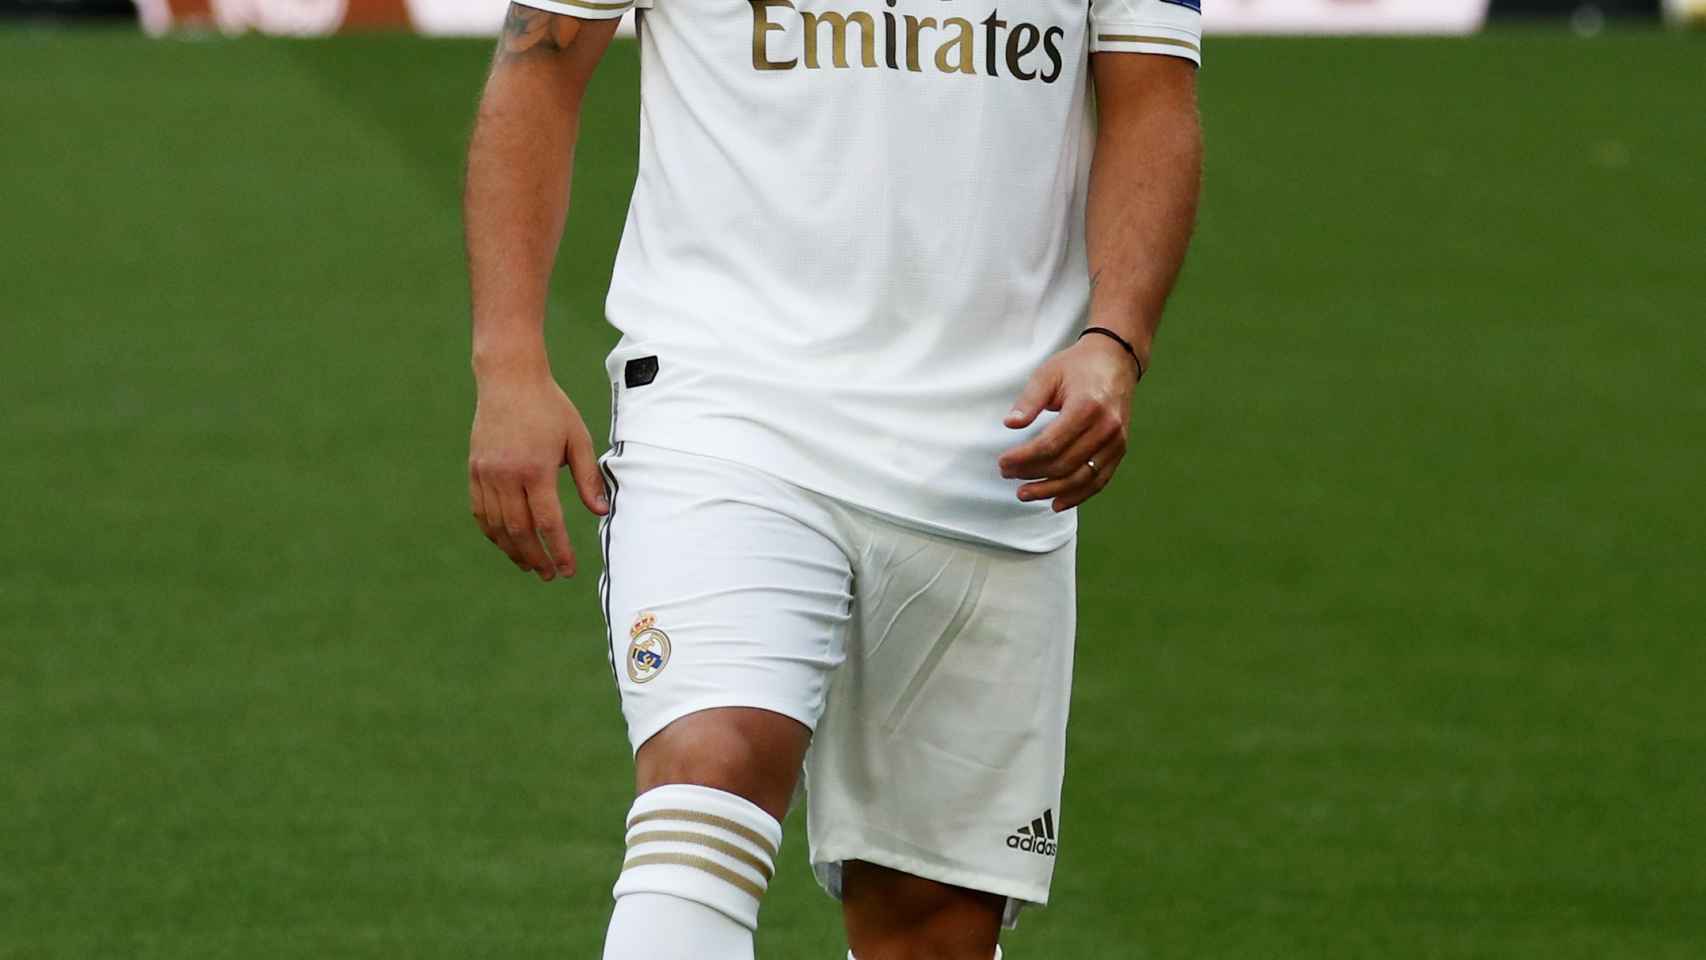 Eden Hazard pisa el Santiago Bernabéu por primera vez con la camiseta del Real Madrid